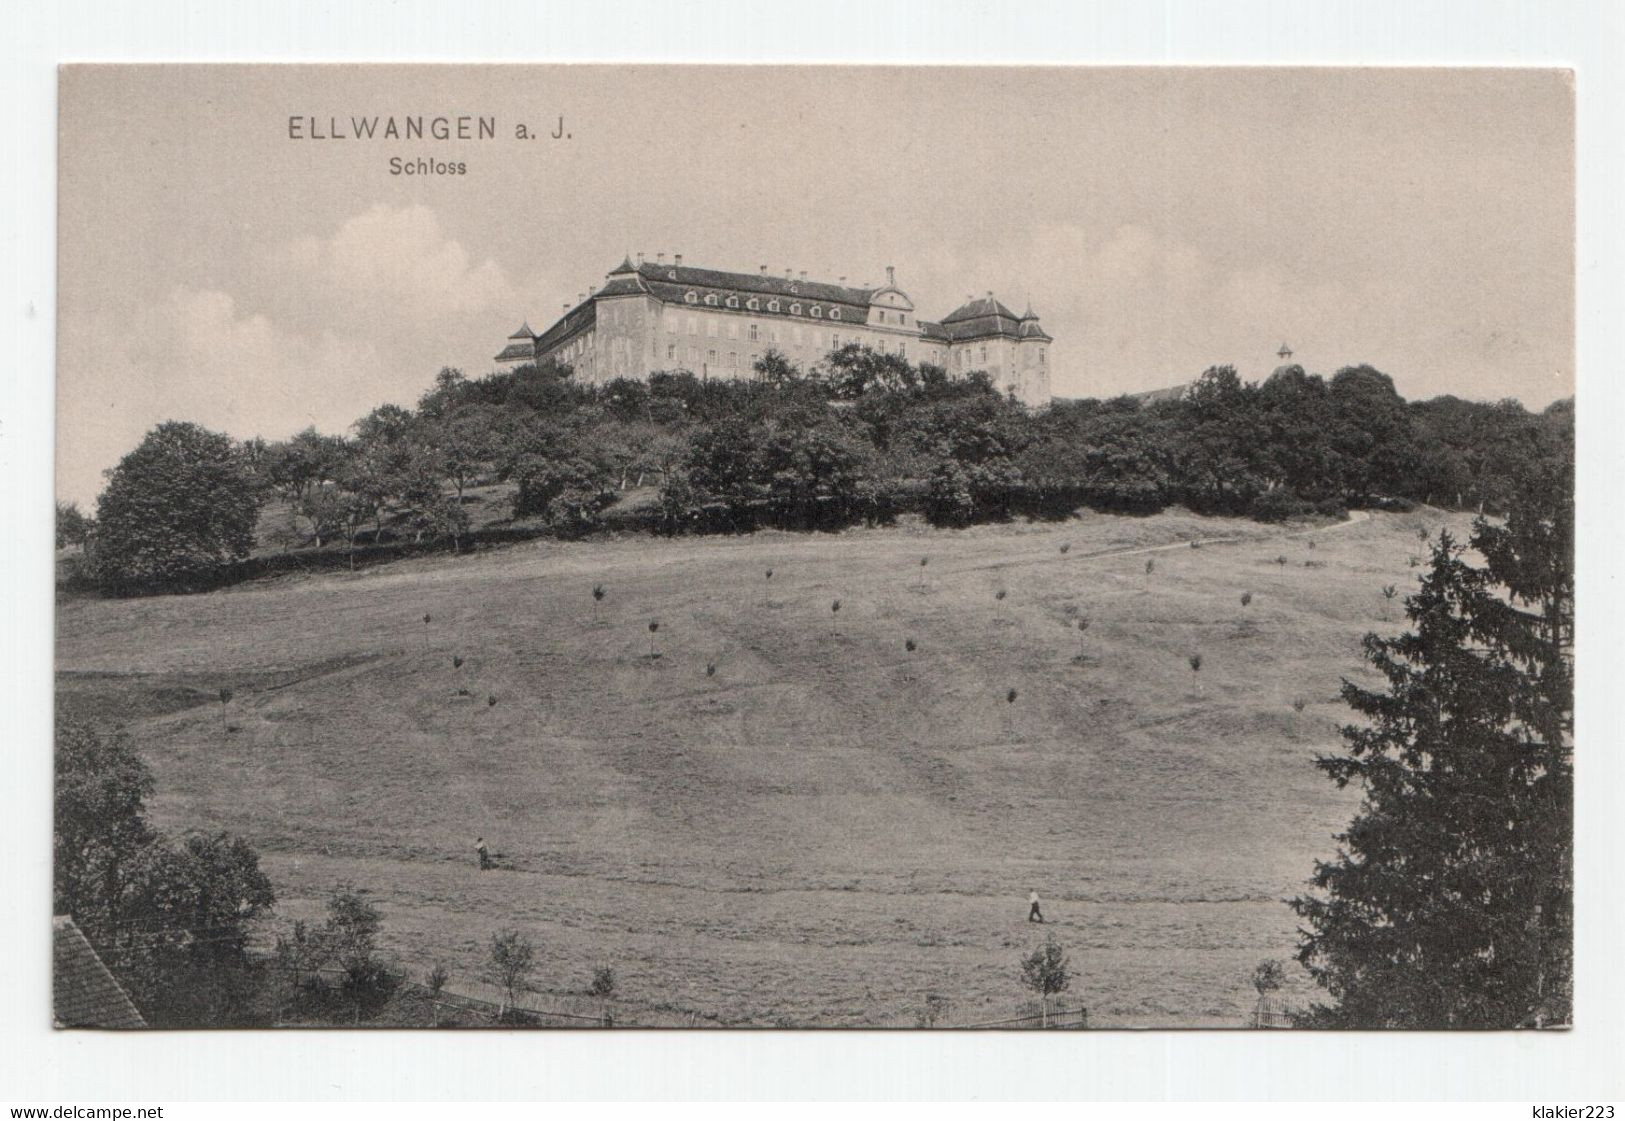 Ellwangen A. J. Schloss - Ellwangen